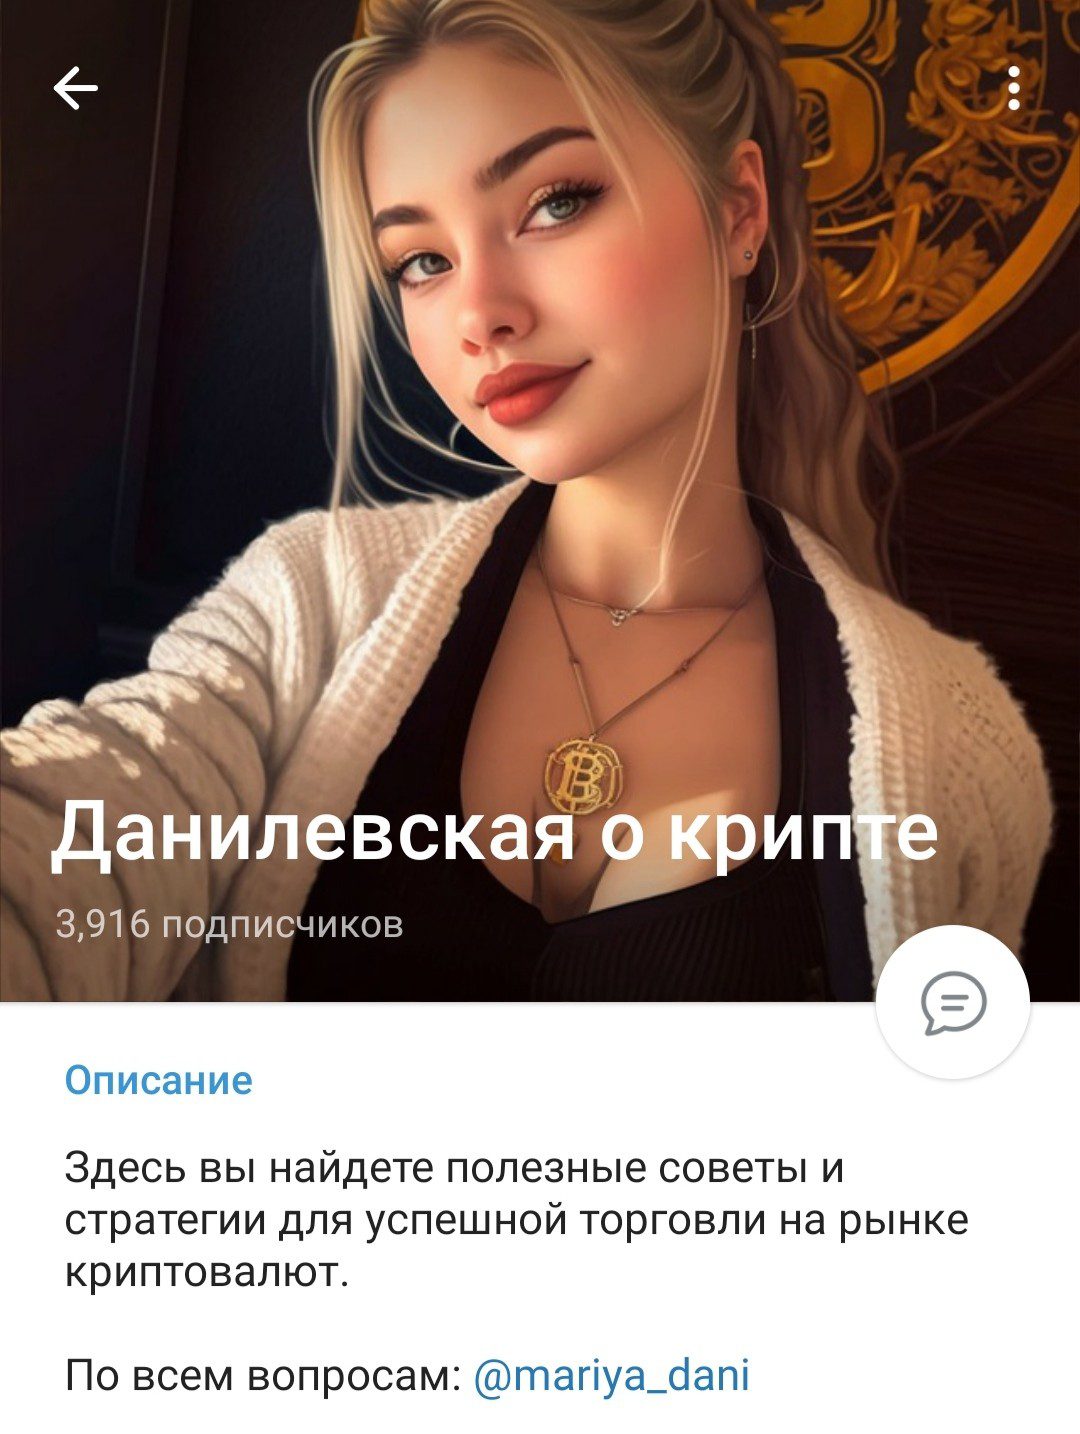 Телеграм канал Данилевская о крипте обзор